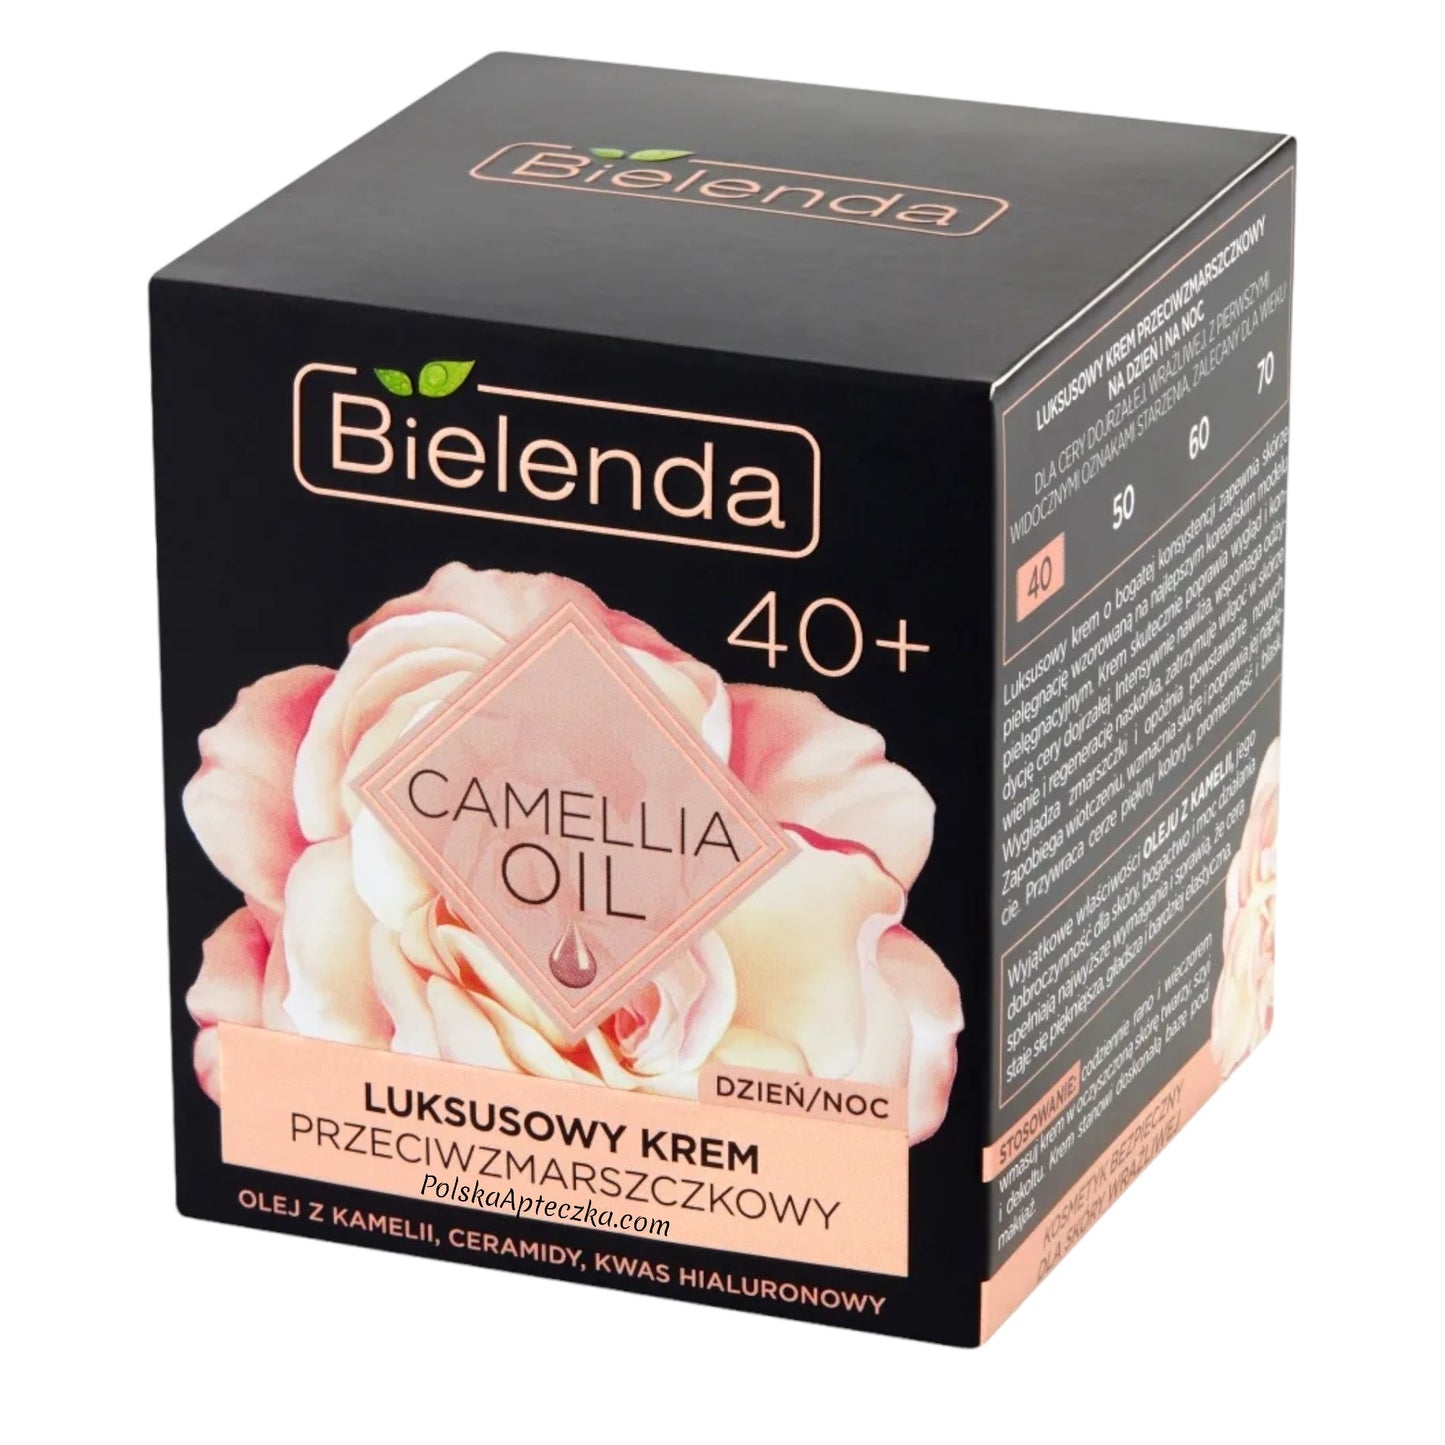 Bielenda, Camellia Oil 40+ Luksusowy krem do twarzy przeciwzmarszczkowy na dzień i noc 50g